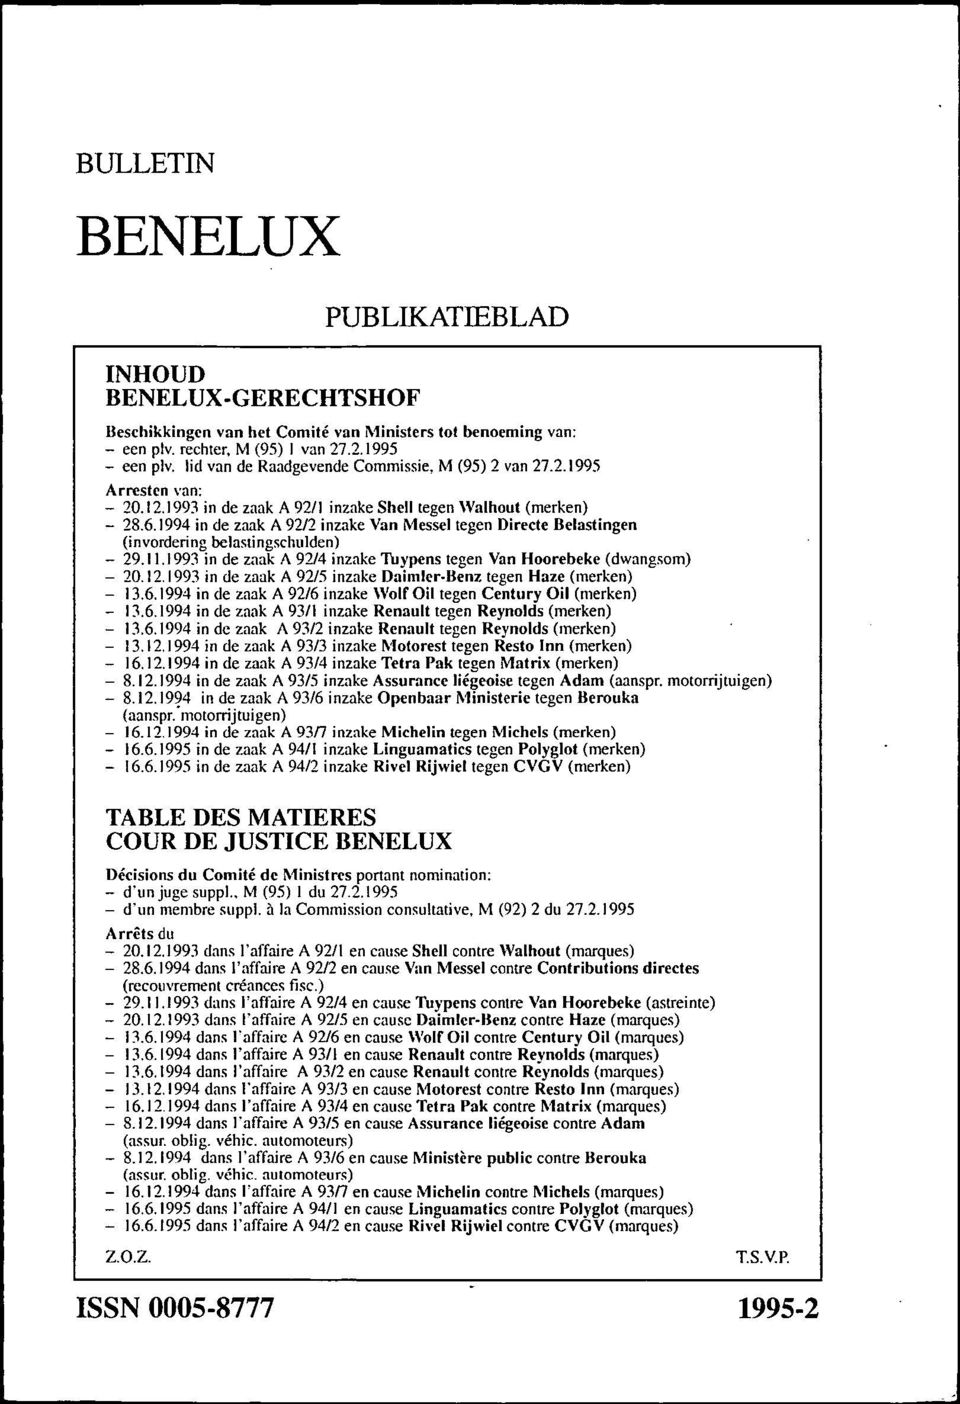 1994 in de zaak A 9212 inzake Van Messel tegen Directe Belastingen (invordering belastingschulden) - 29.1 1.1993 in de zaak A 92/4 inzake 'I iypens tegen Van Hoorebeke (dwangsom) - 20.12. 1993 in de zaak A 92/5 inzake Daimler-Benz tegen Haze (merken) - 13.